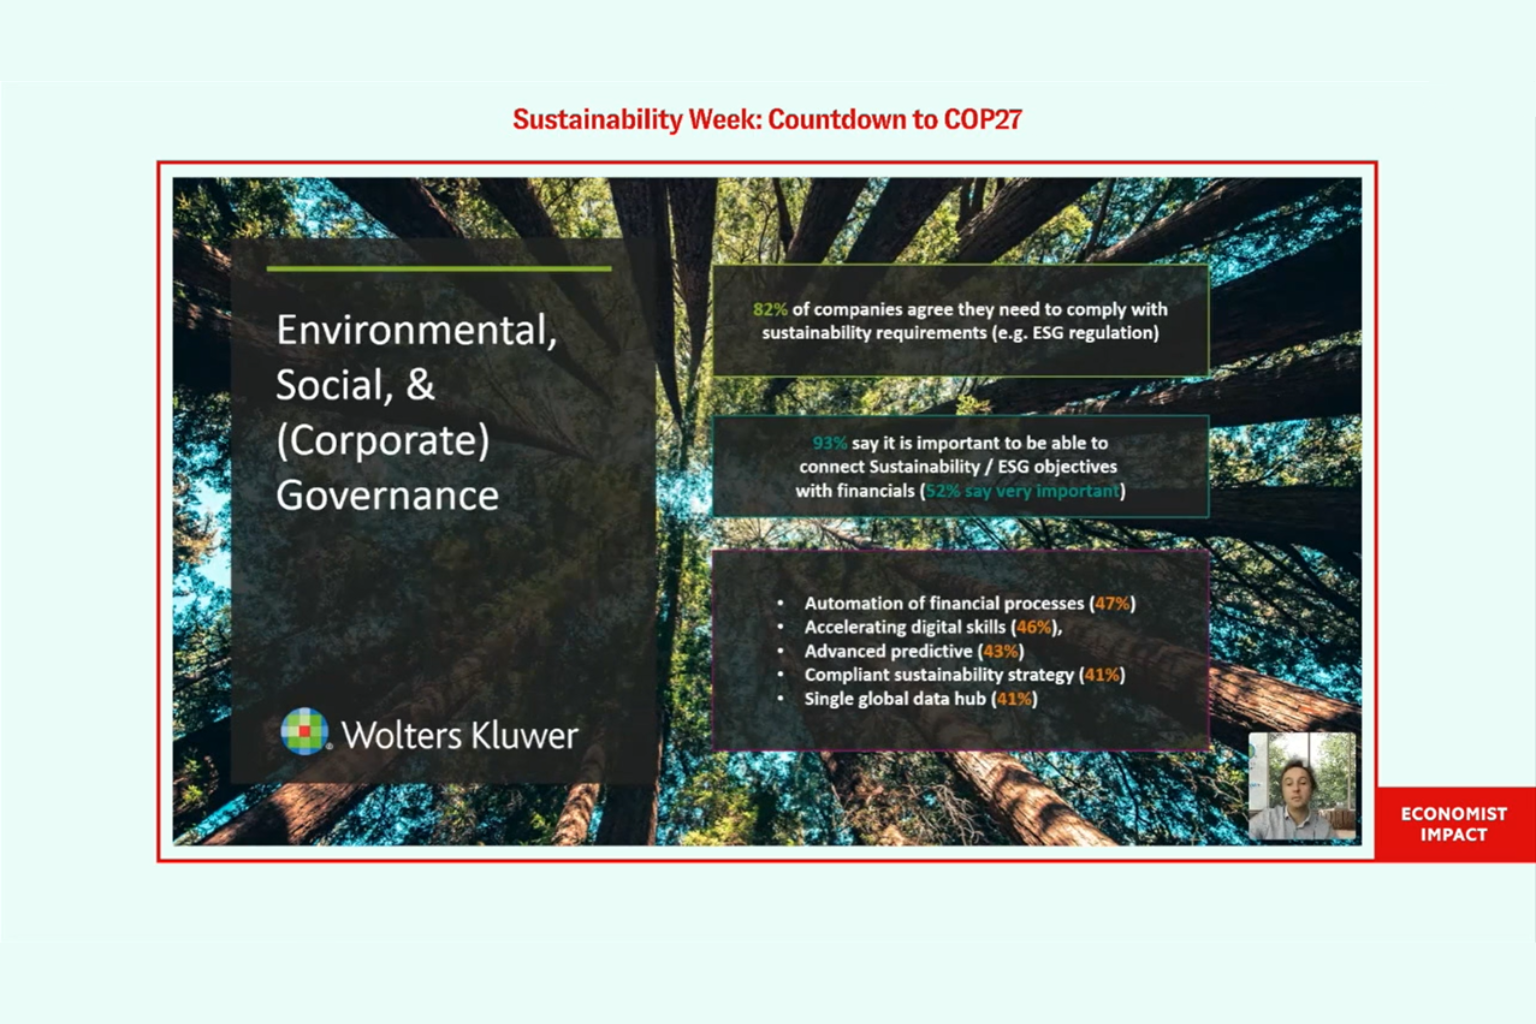 cch-tagetik-og-uk- Economist Impact Sustainability Week Oct 2022 